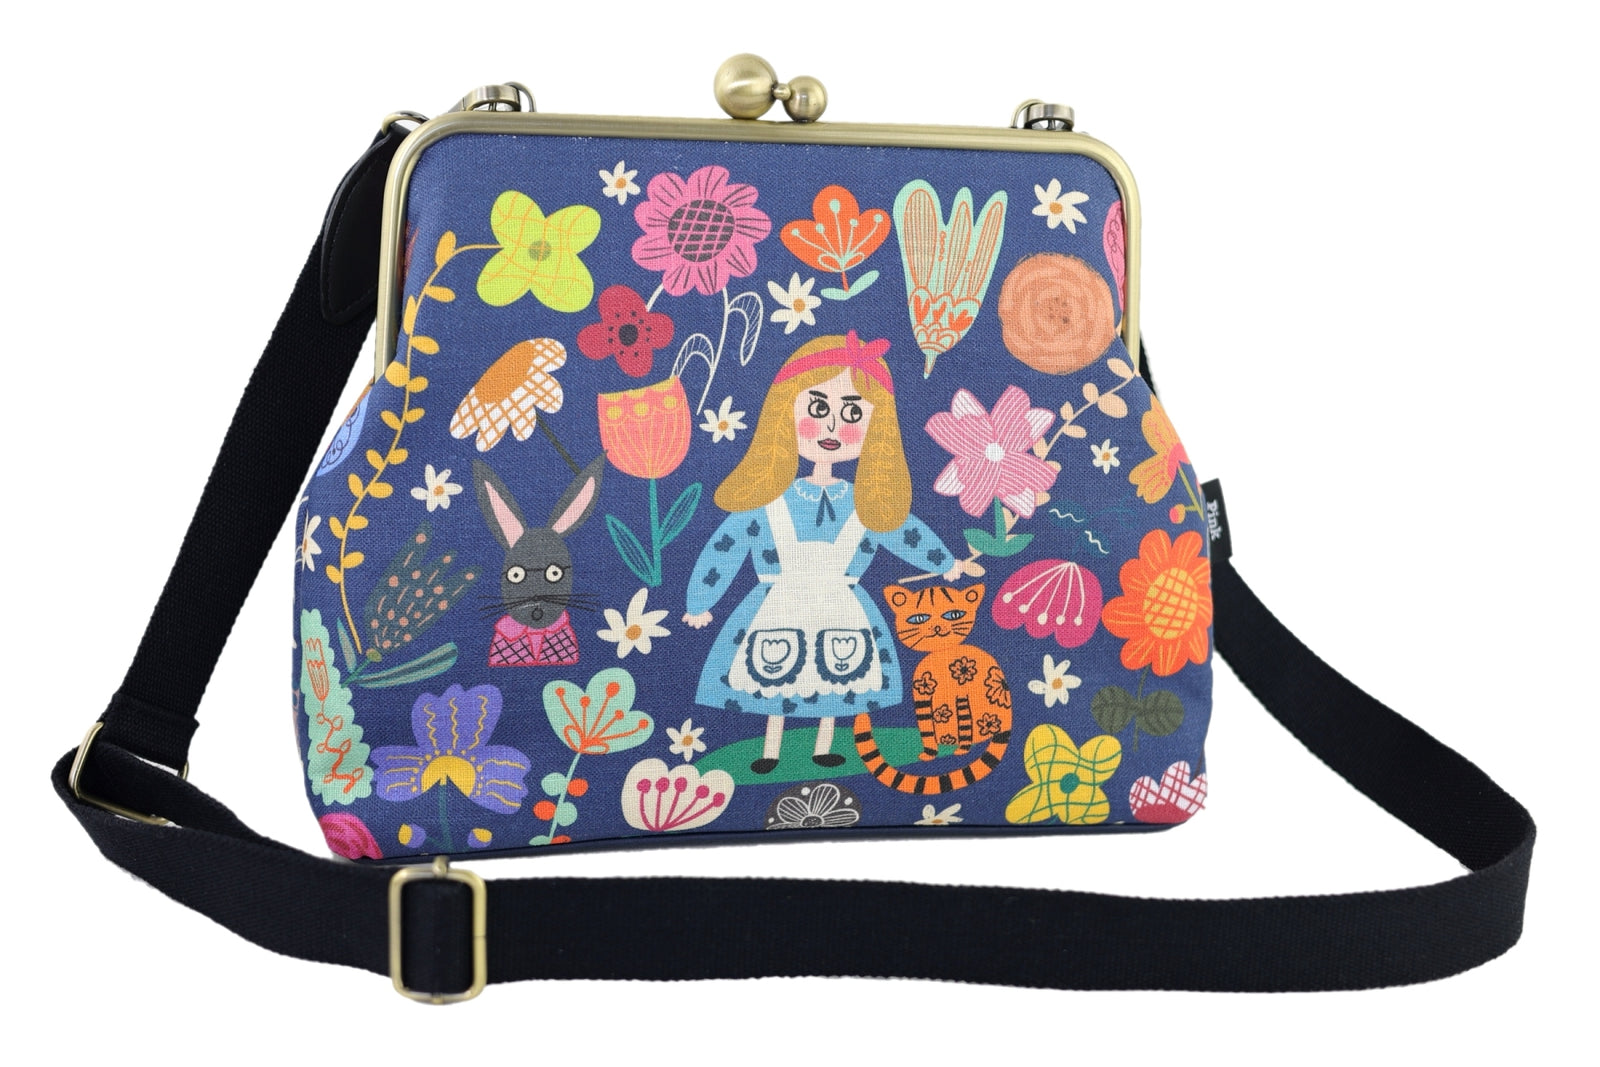 Alice in wonderland large capacity side bag carry as handbag/shoulder Sky  Blue